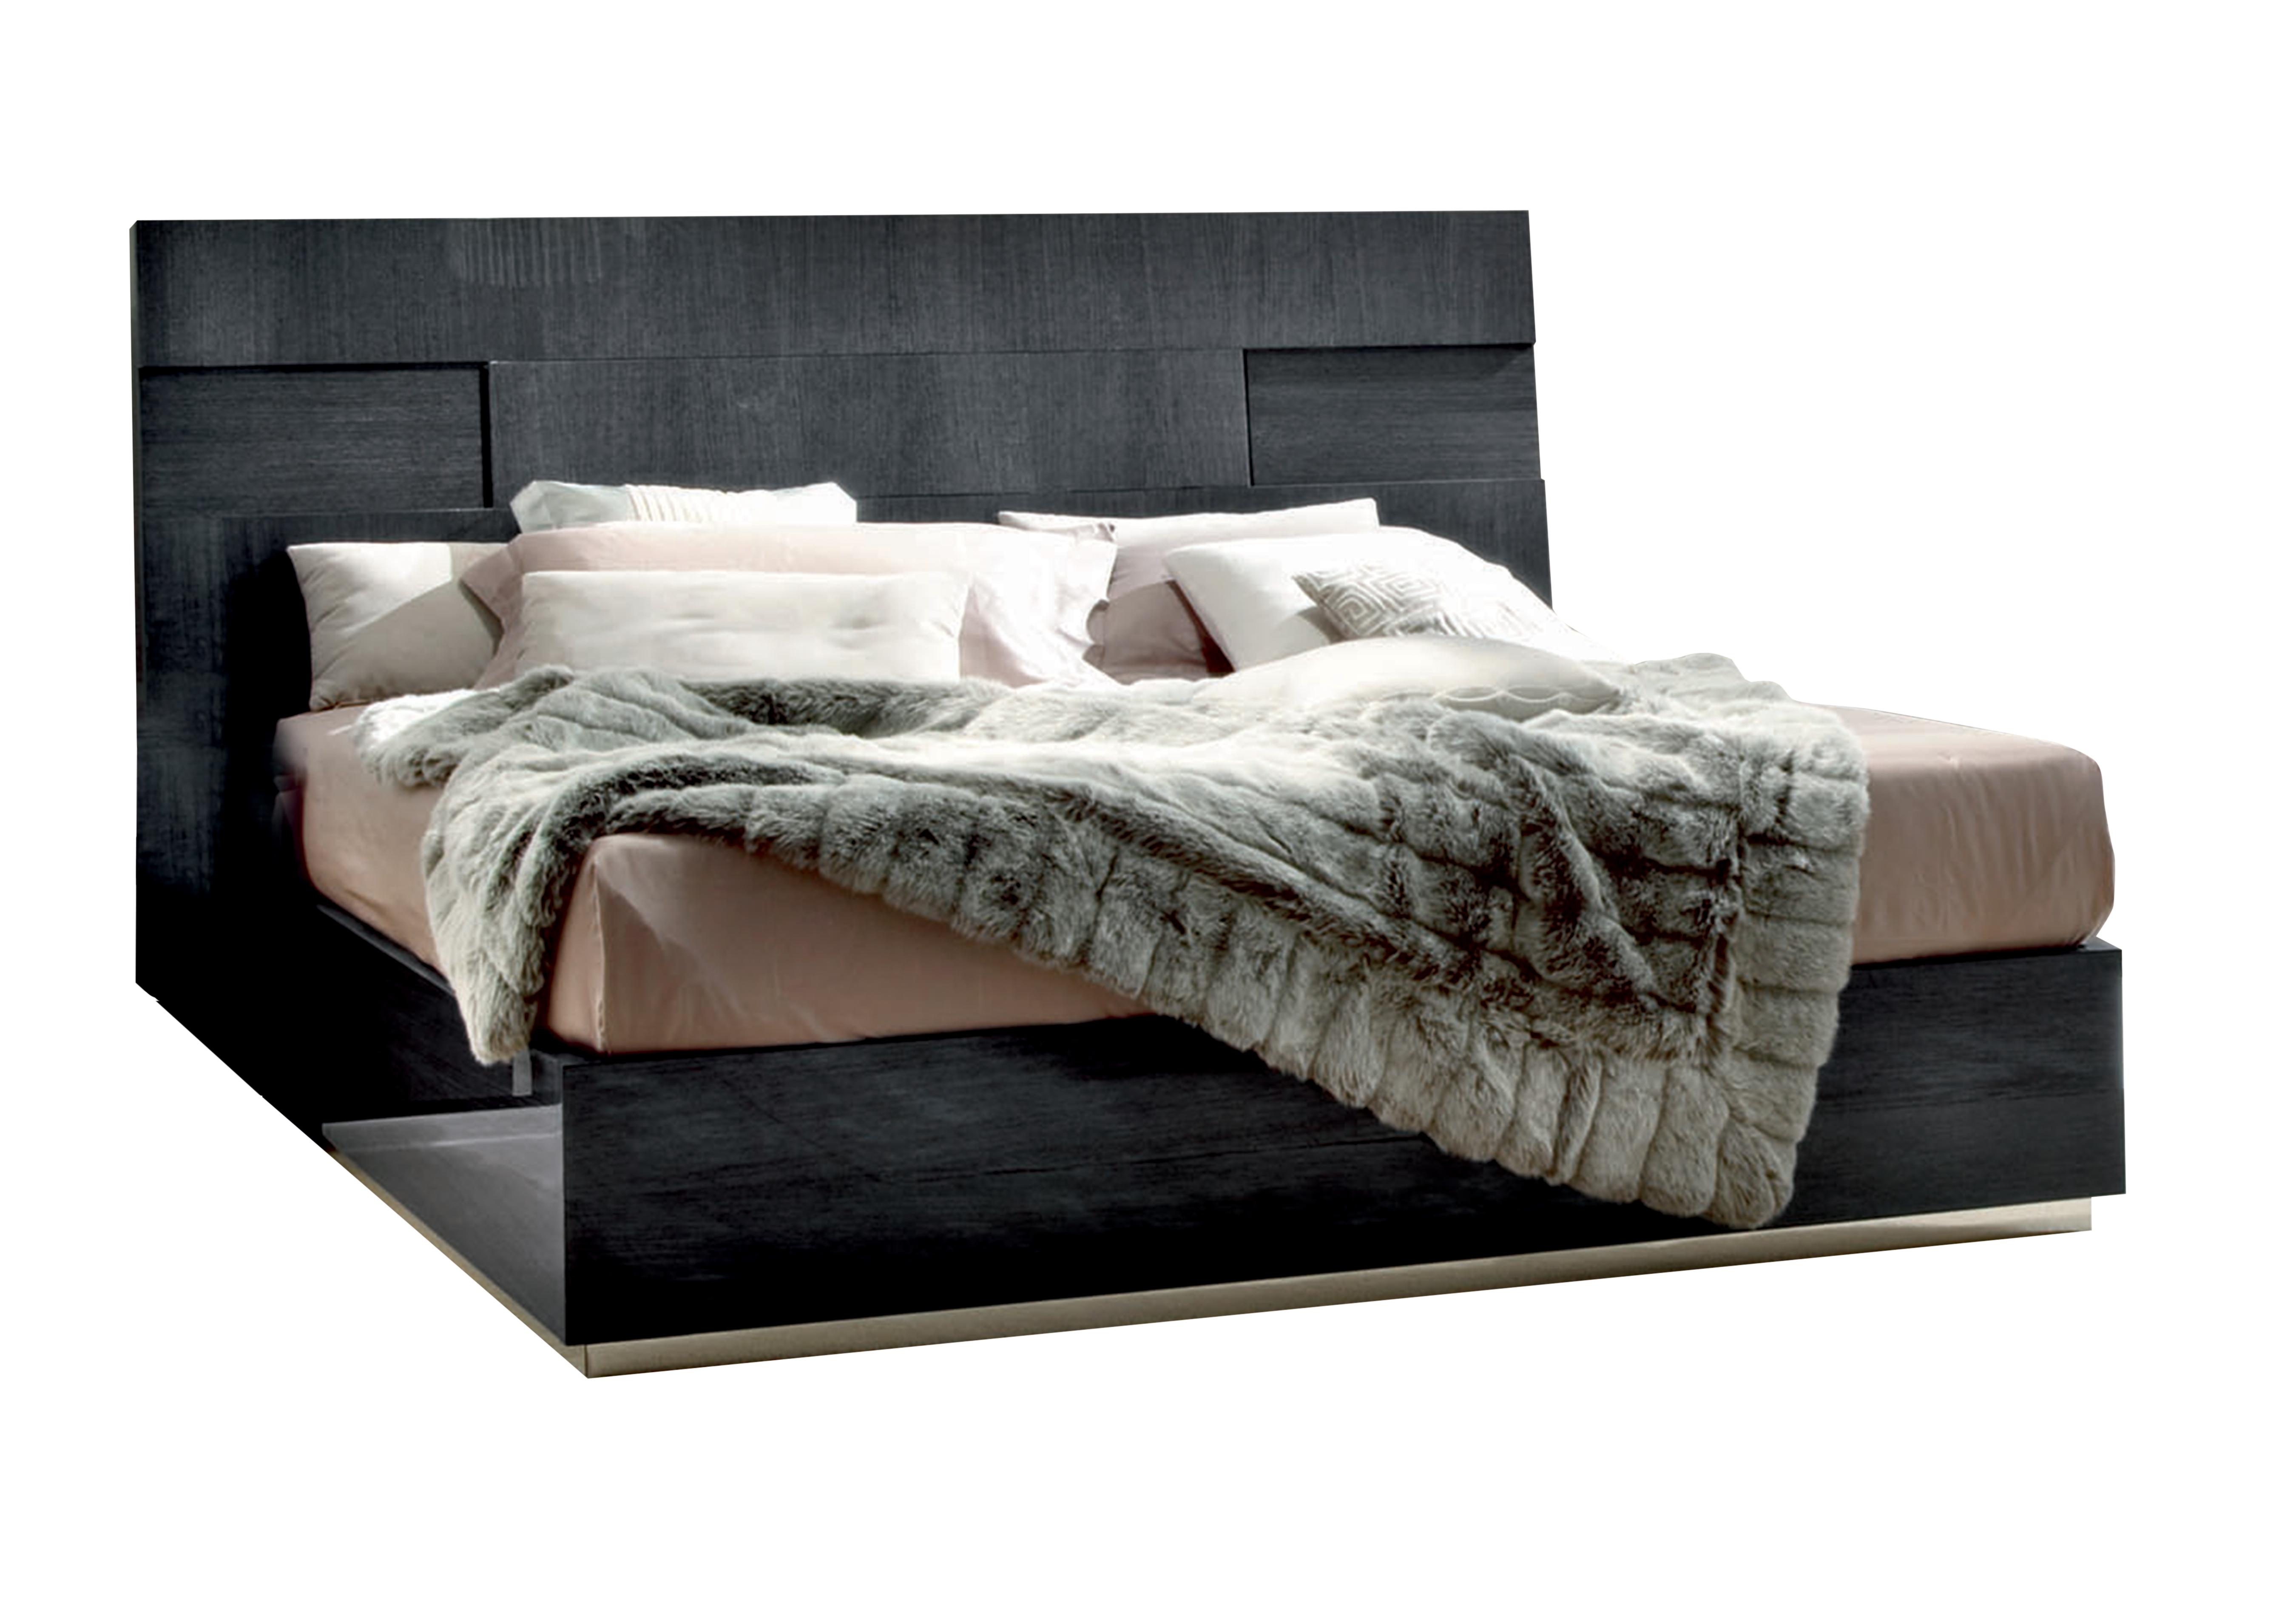 St Moritz King Size Bed Frame in  on Furniture Village